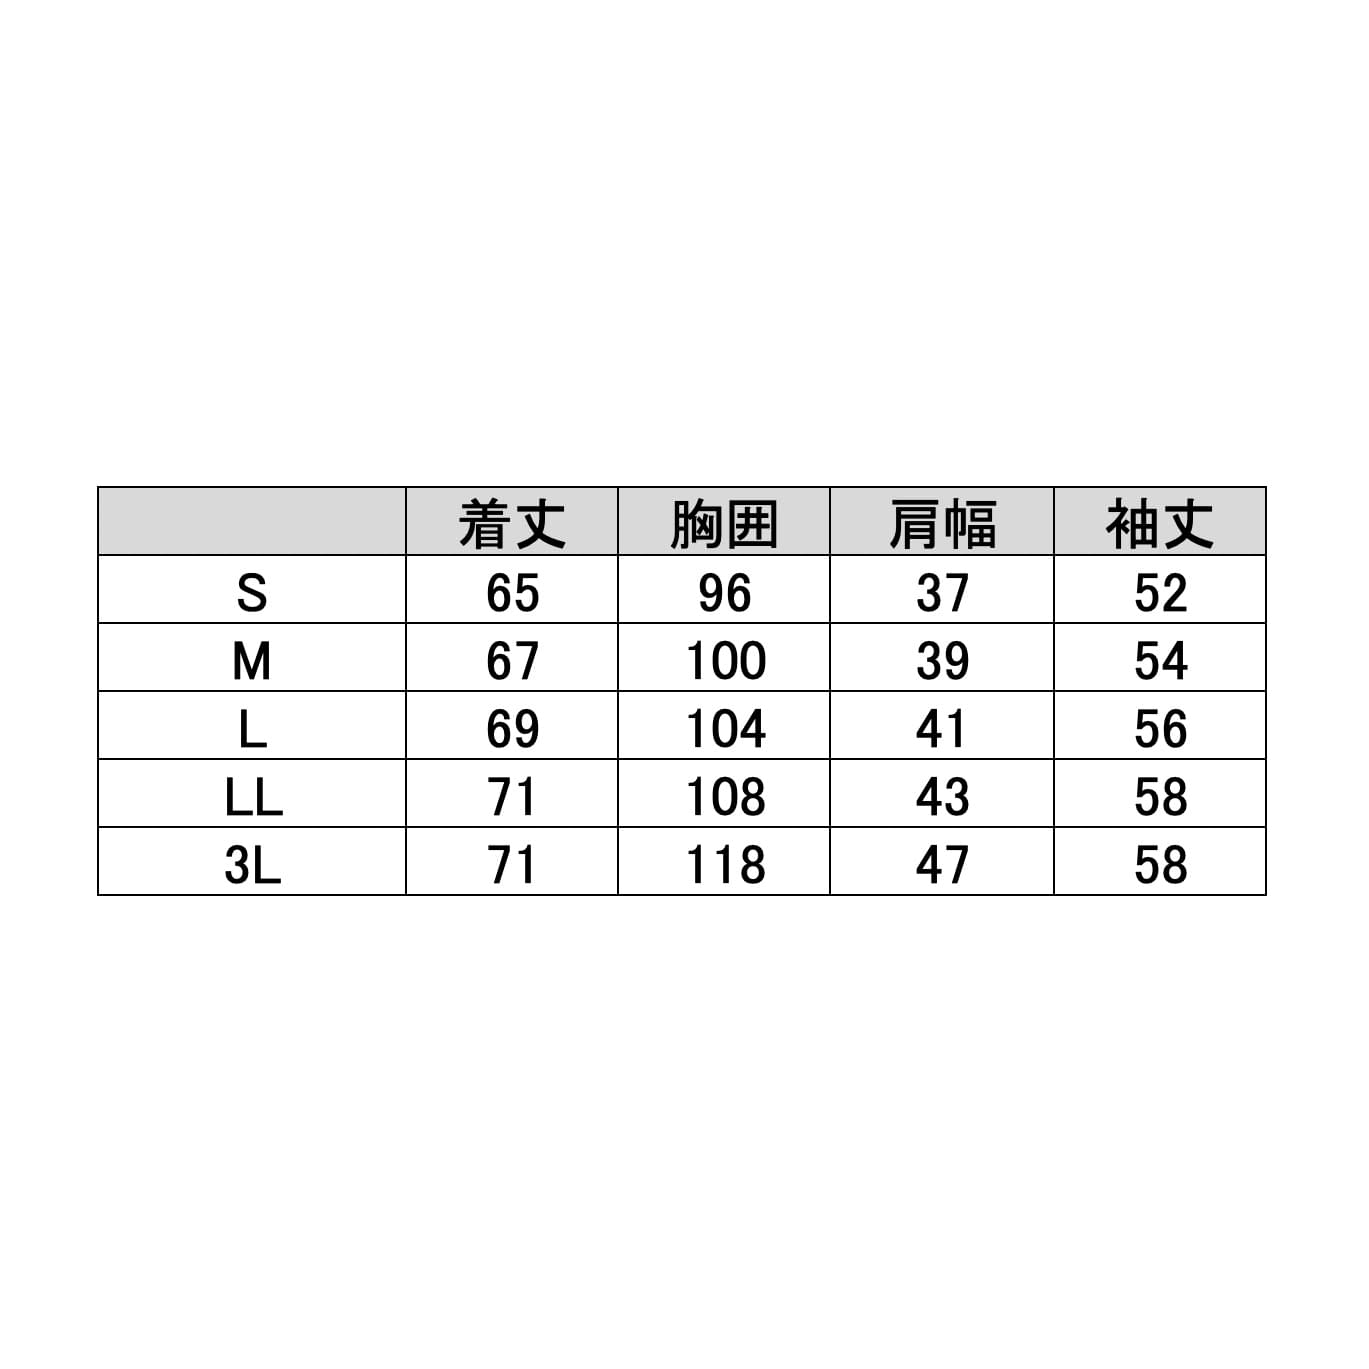 (23-7836-00)カーディガン（ロング丈） C-10(S) ｶｰﾃﾞｨｶﾞﾝﾛﾝｸﾞﾀｹ ピンク×ホワイト【1枚単位】【2019年カタログ商品】